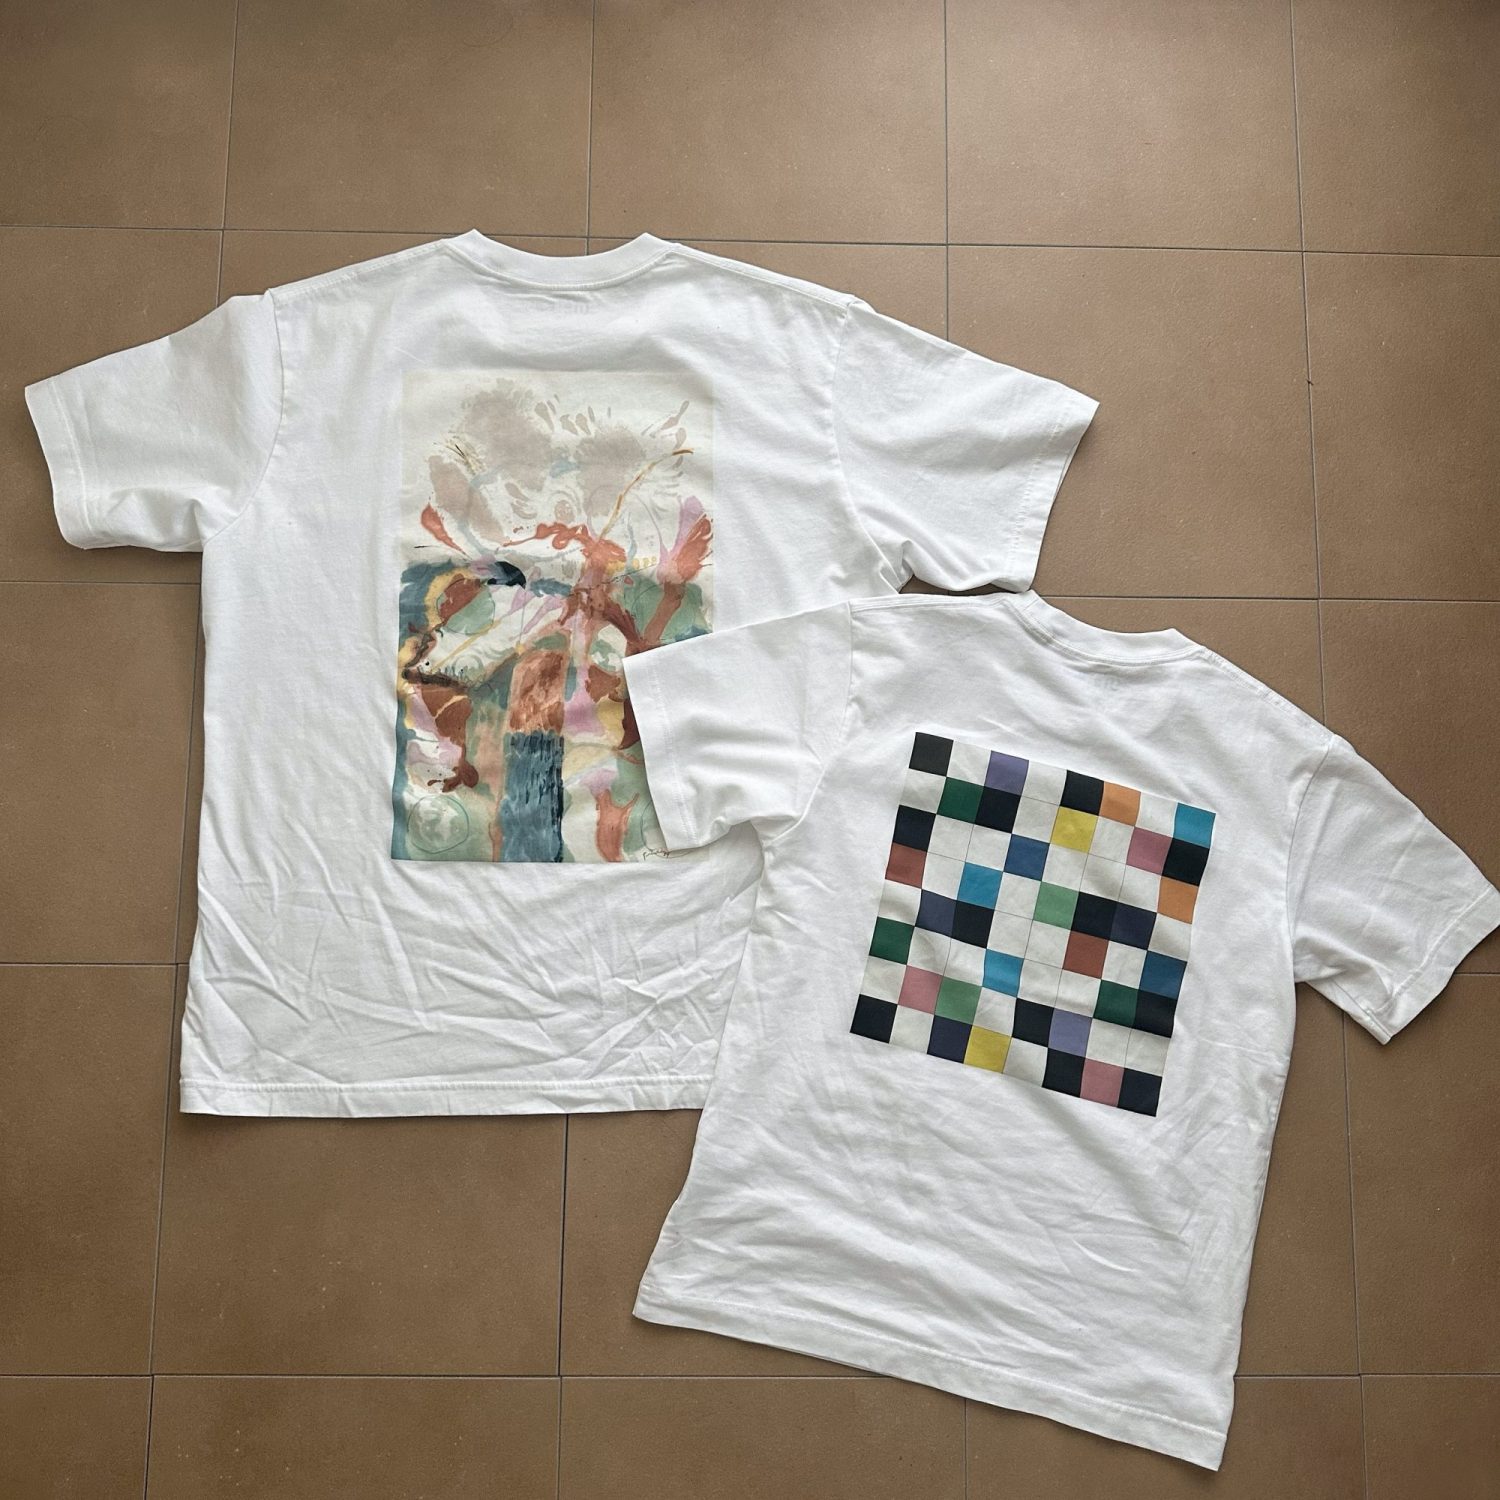 親子コーデができる、ユニクロのMoMAコラボのアートTシャツ♡ユニクロのおすすめ購入品。キッズも着れるメンズのXSサイズは即買い！